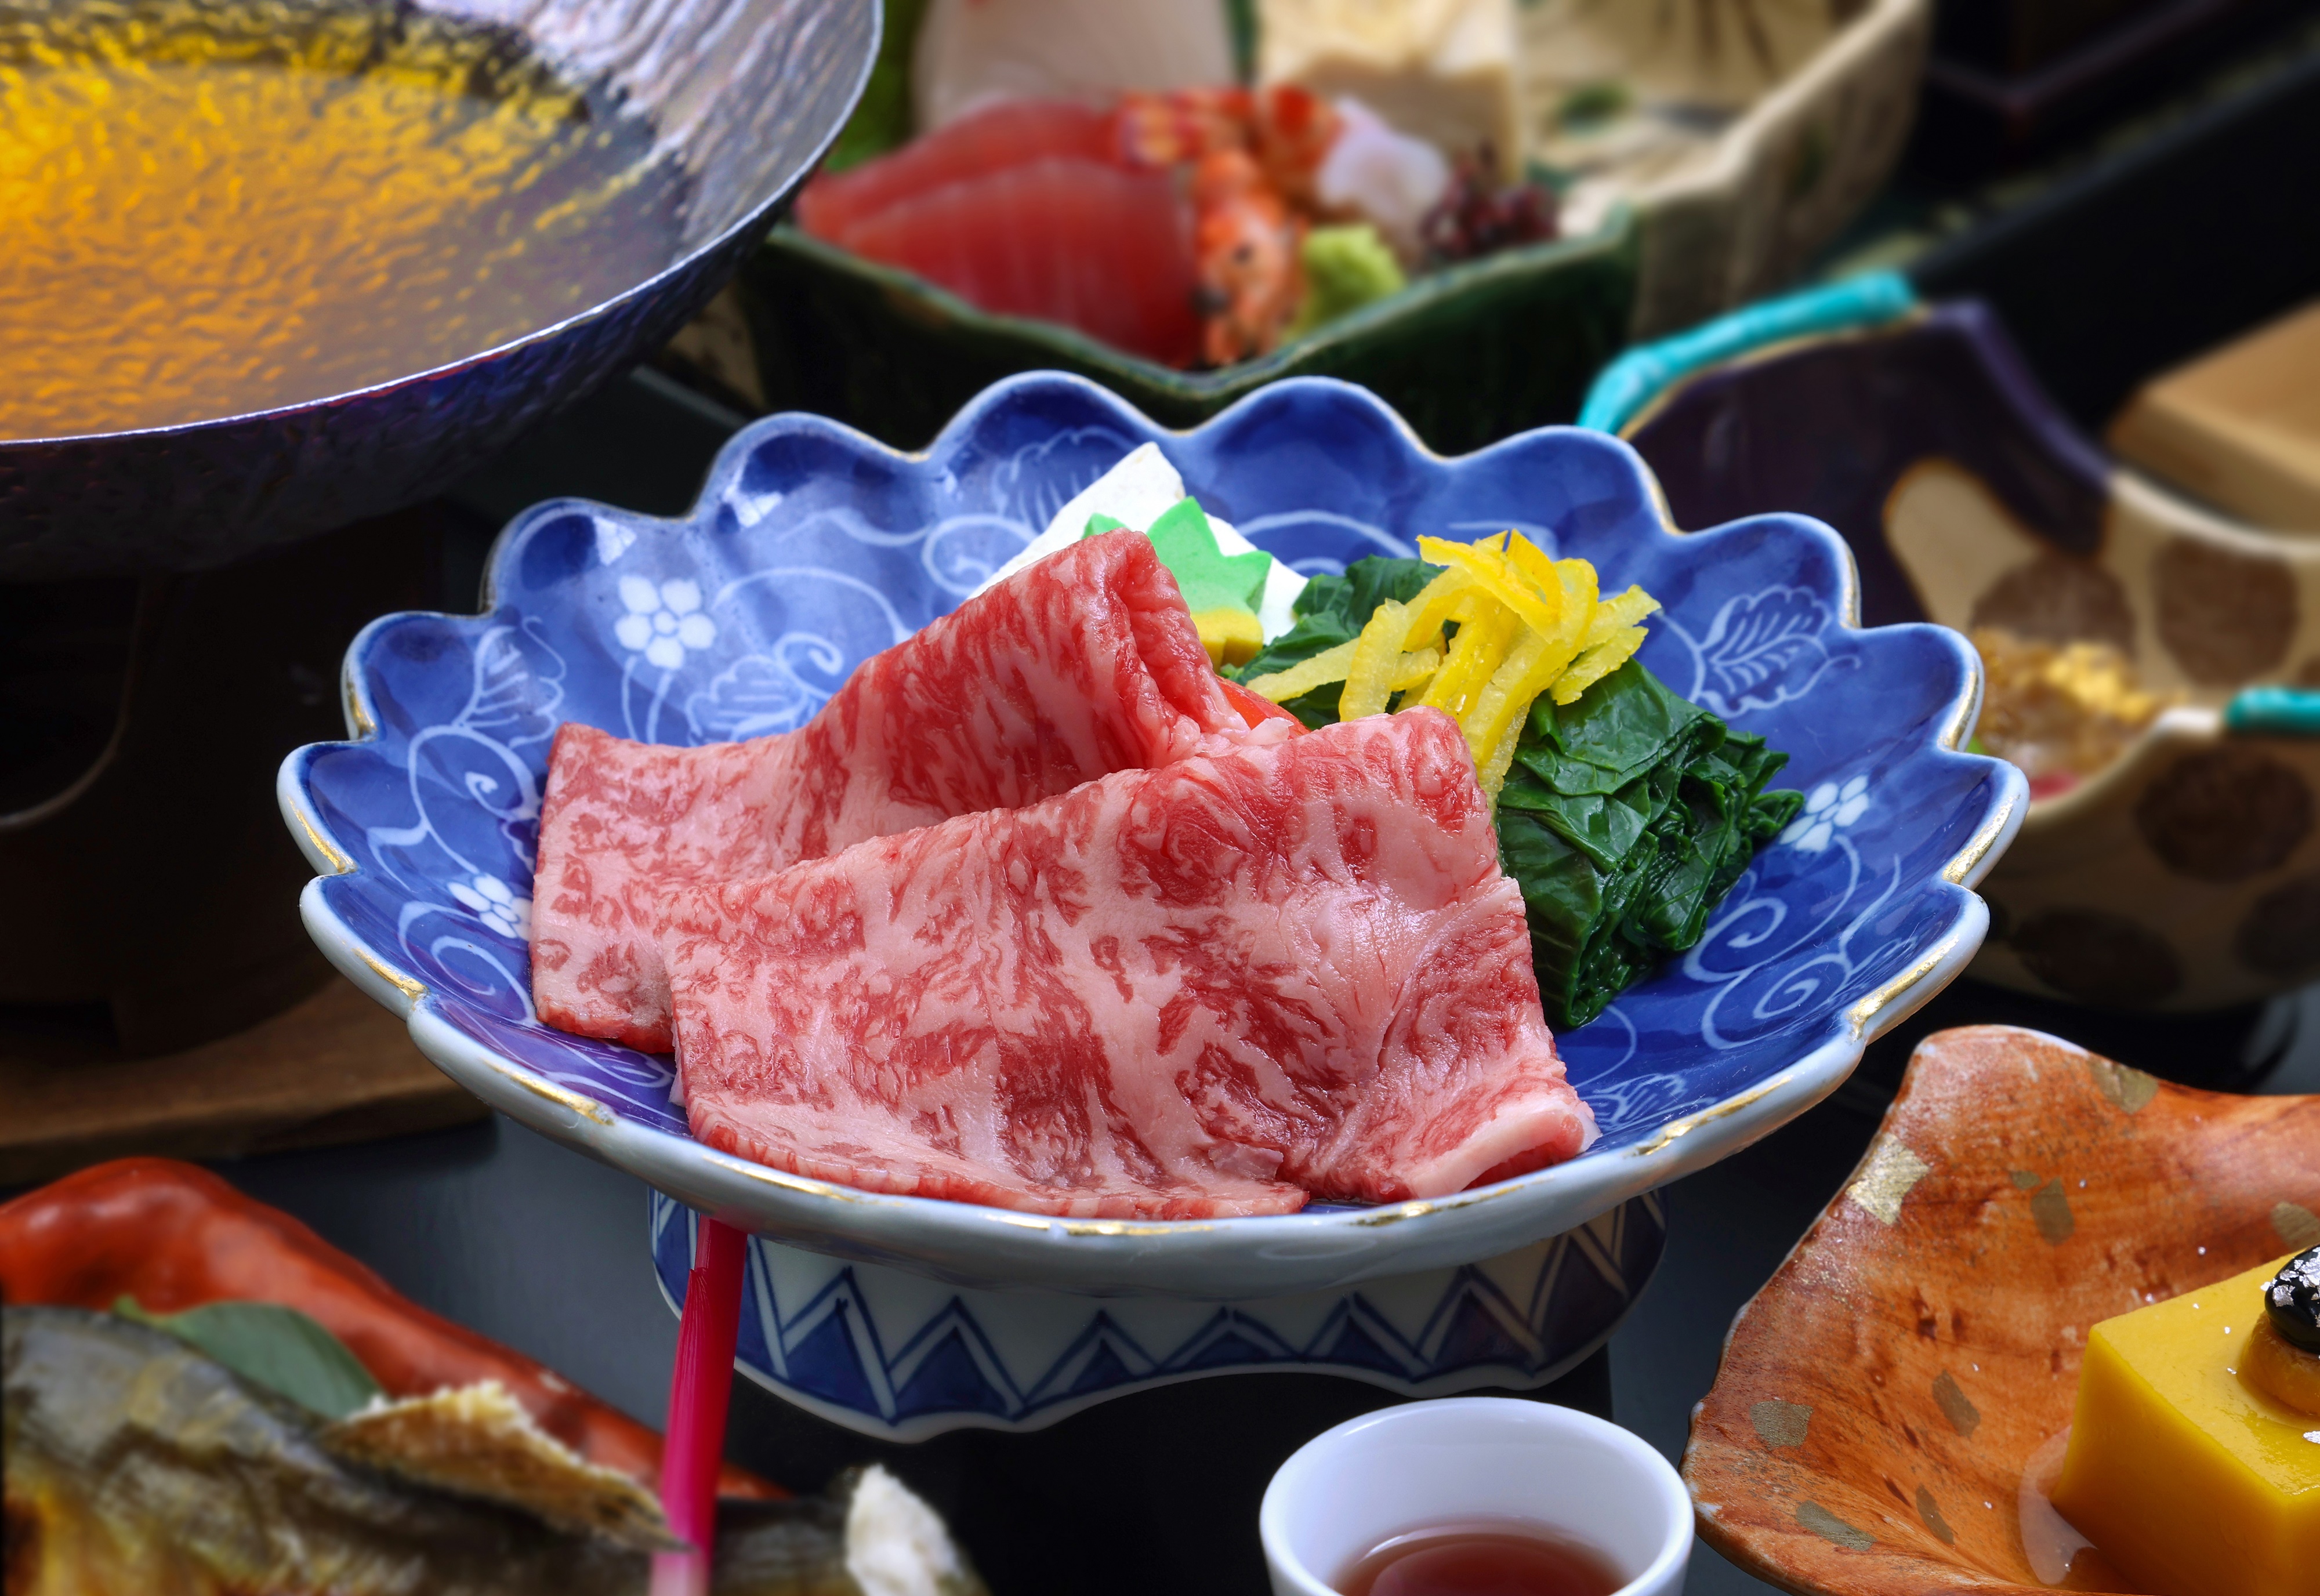 【料理長おすすめ】当館人気のプラン。飛騨牛の味しゃぶをはじめ、特製焼寿司などおもてなし料理を楽しむ。